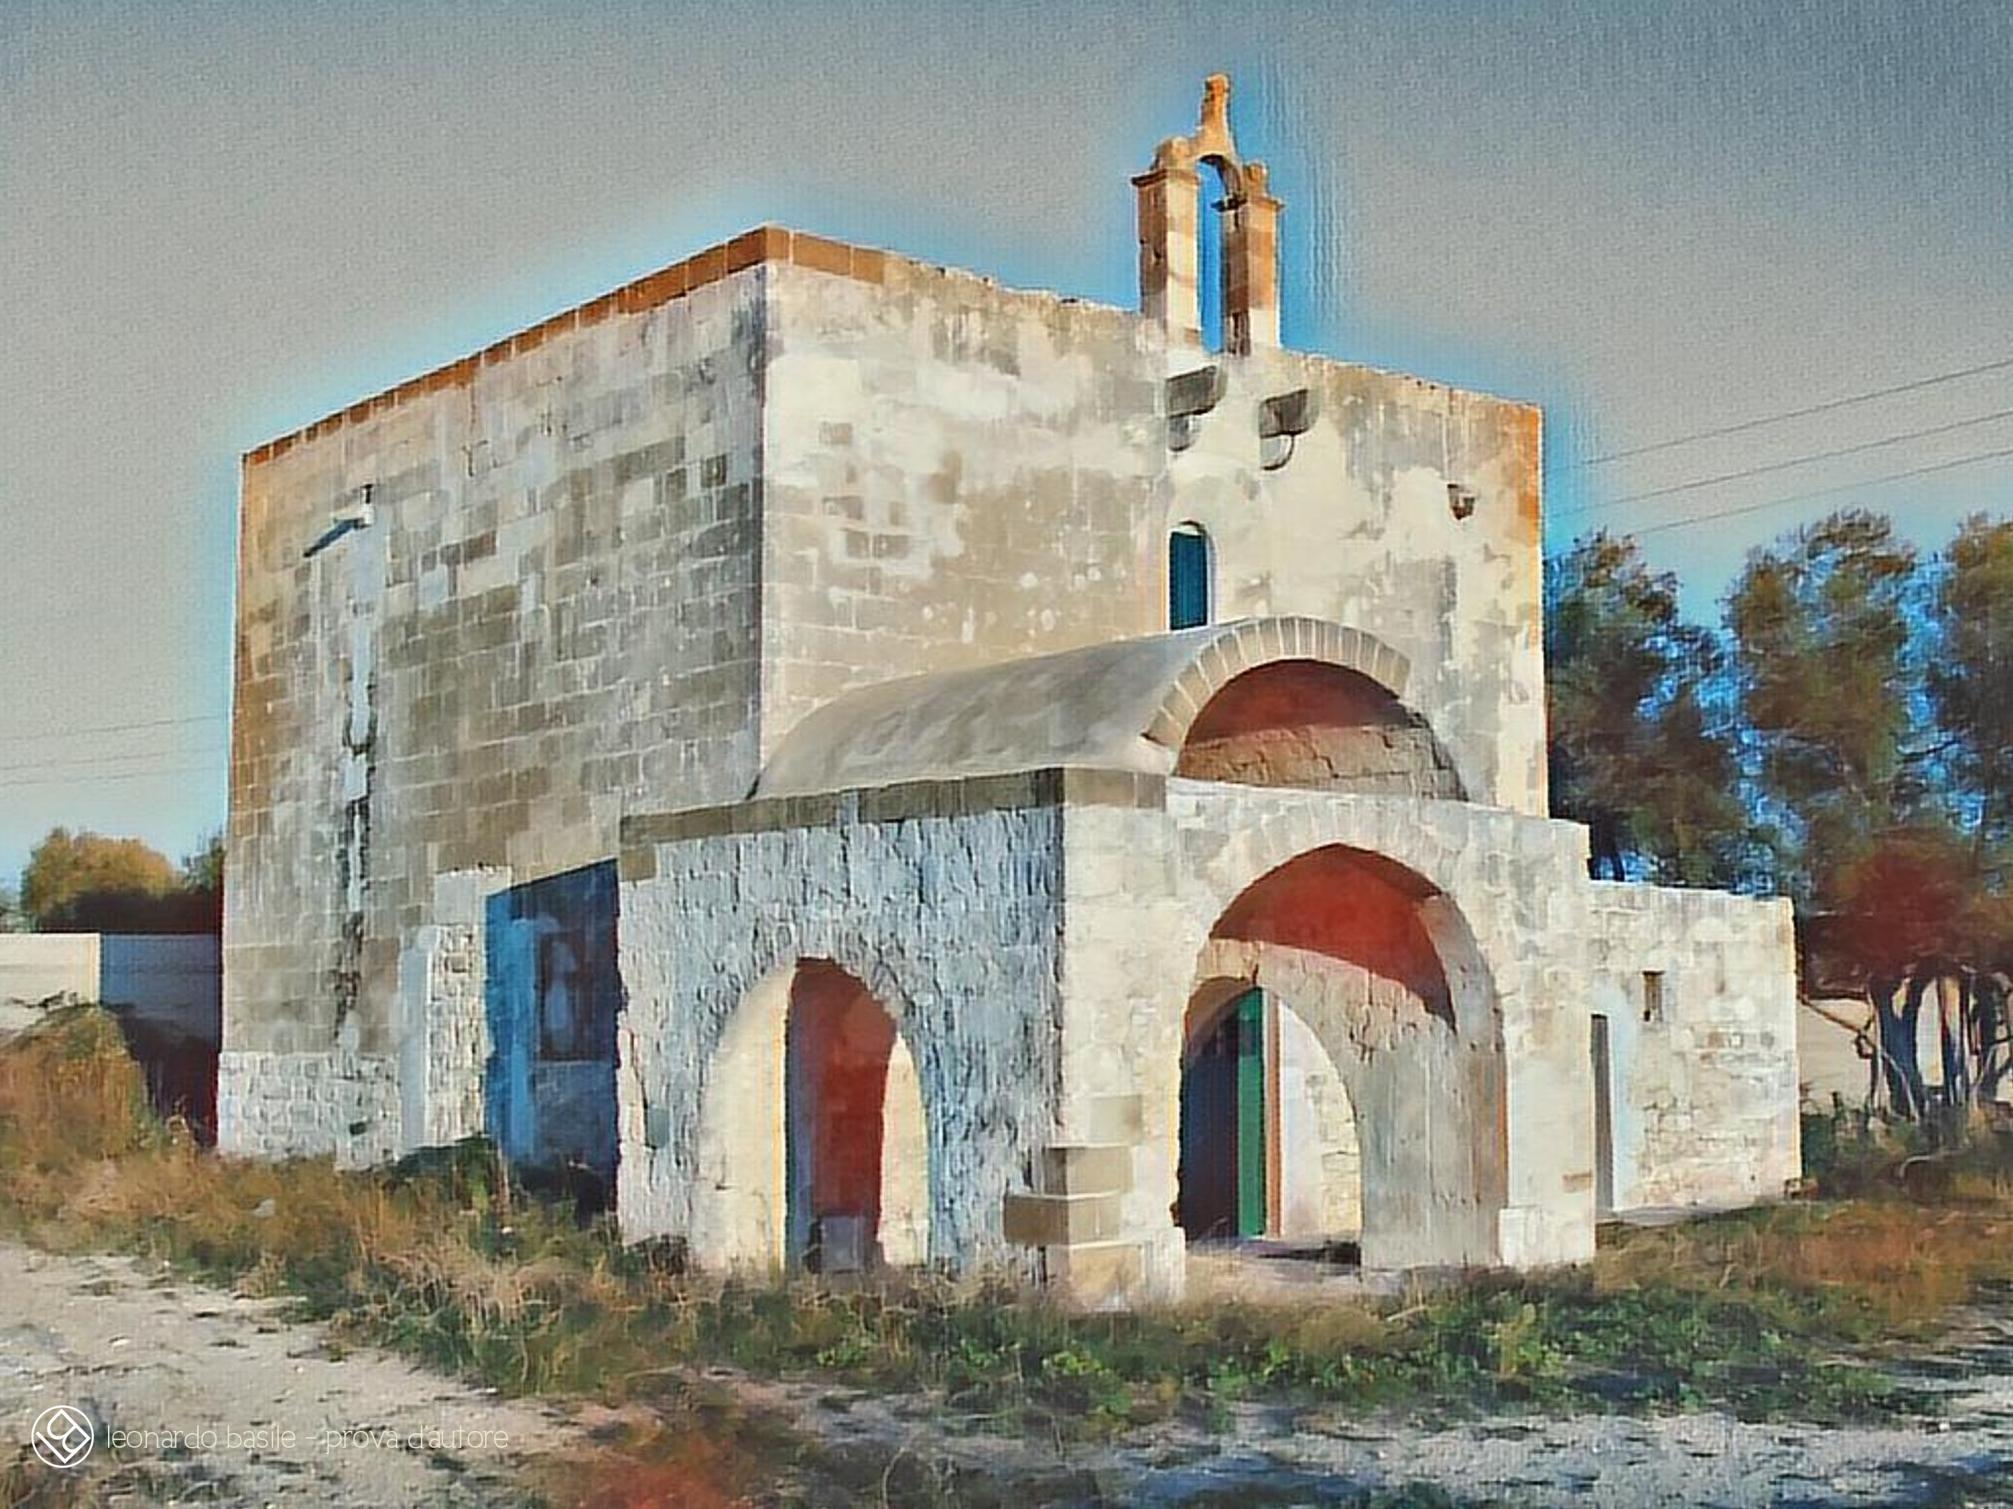 Elaborazione grafica da una fotografia della Chiesa medievale dell'Annunziata di Bari/S.Spirito- 15